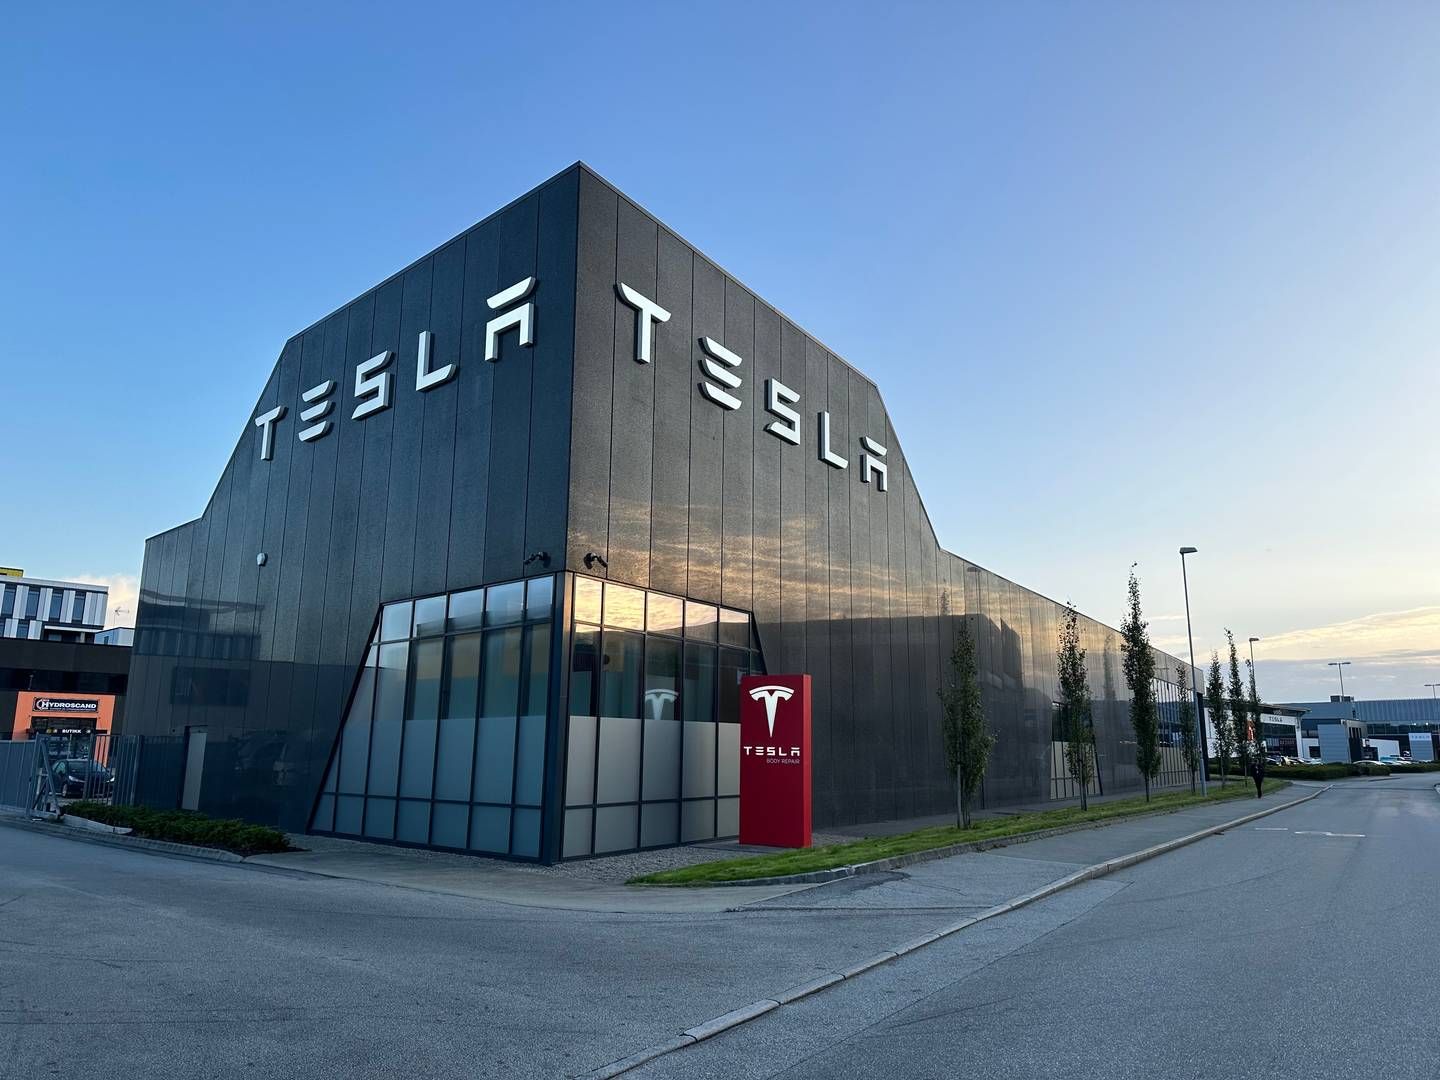 SOLGT: Eiendommen som ligger ved siden av Teslas hovedbygg i Sandnes er solgt. | Foto: Kraft Finans